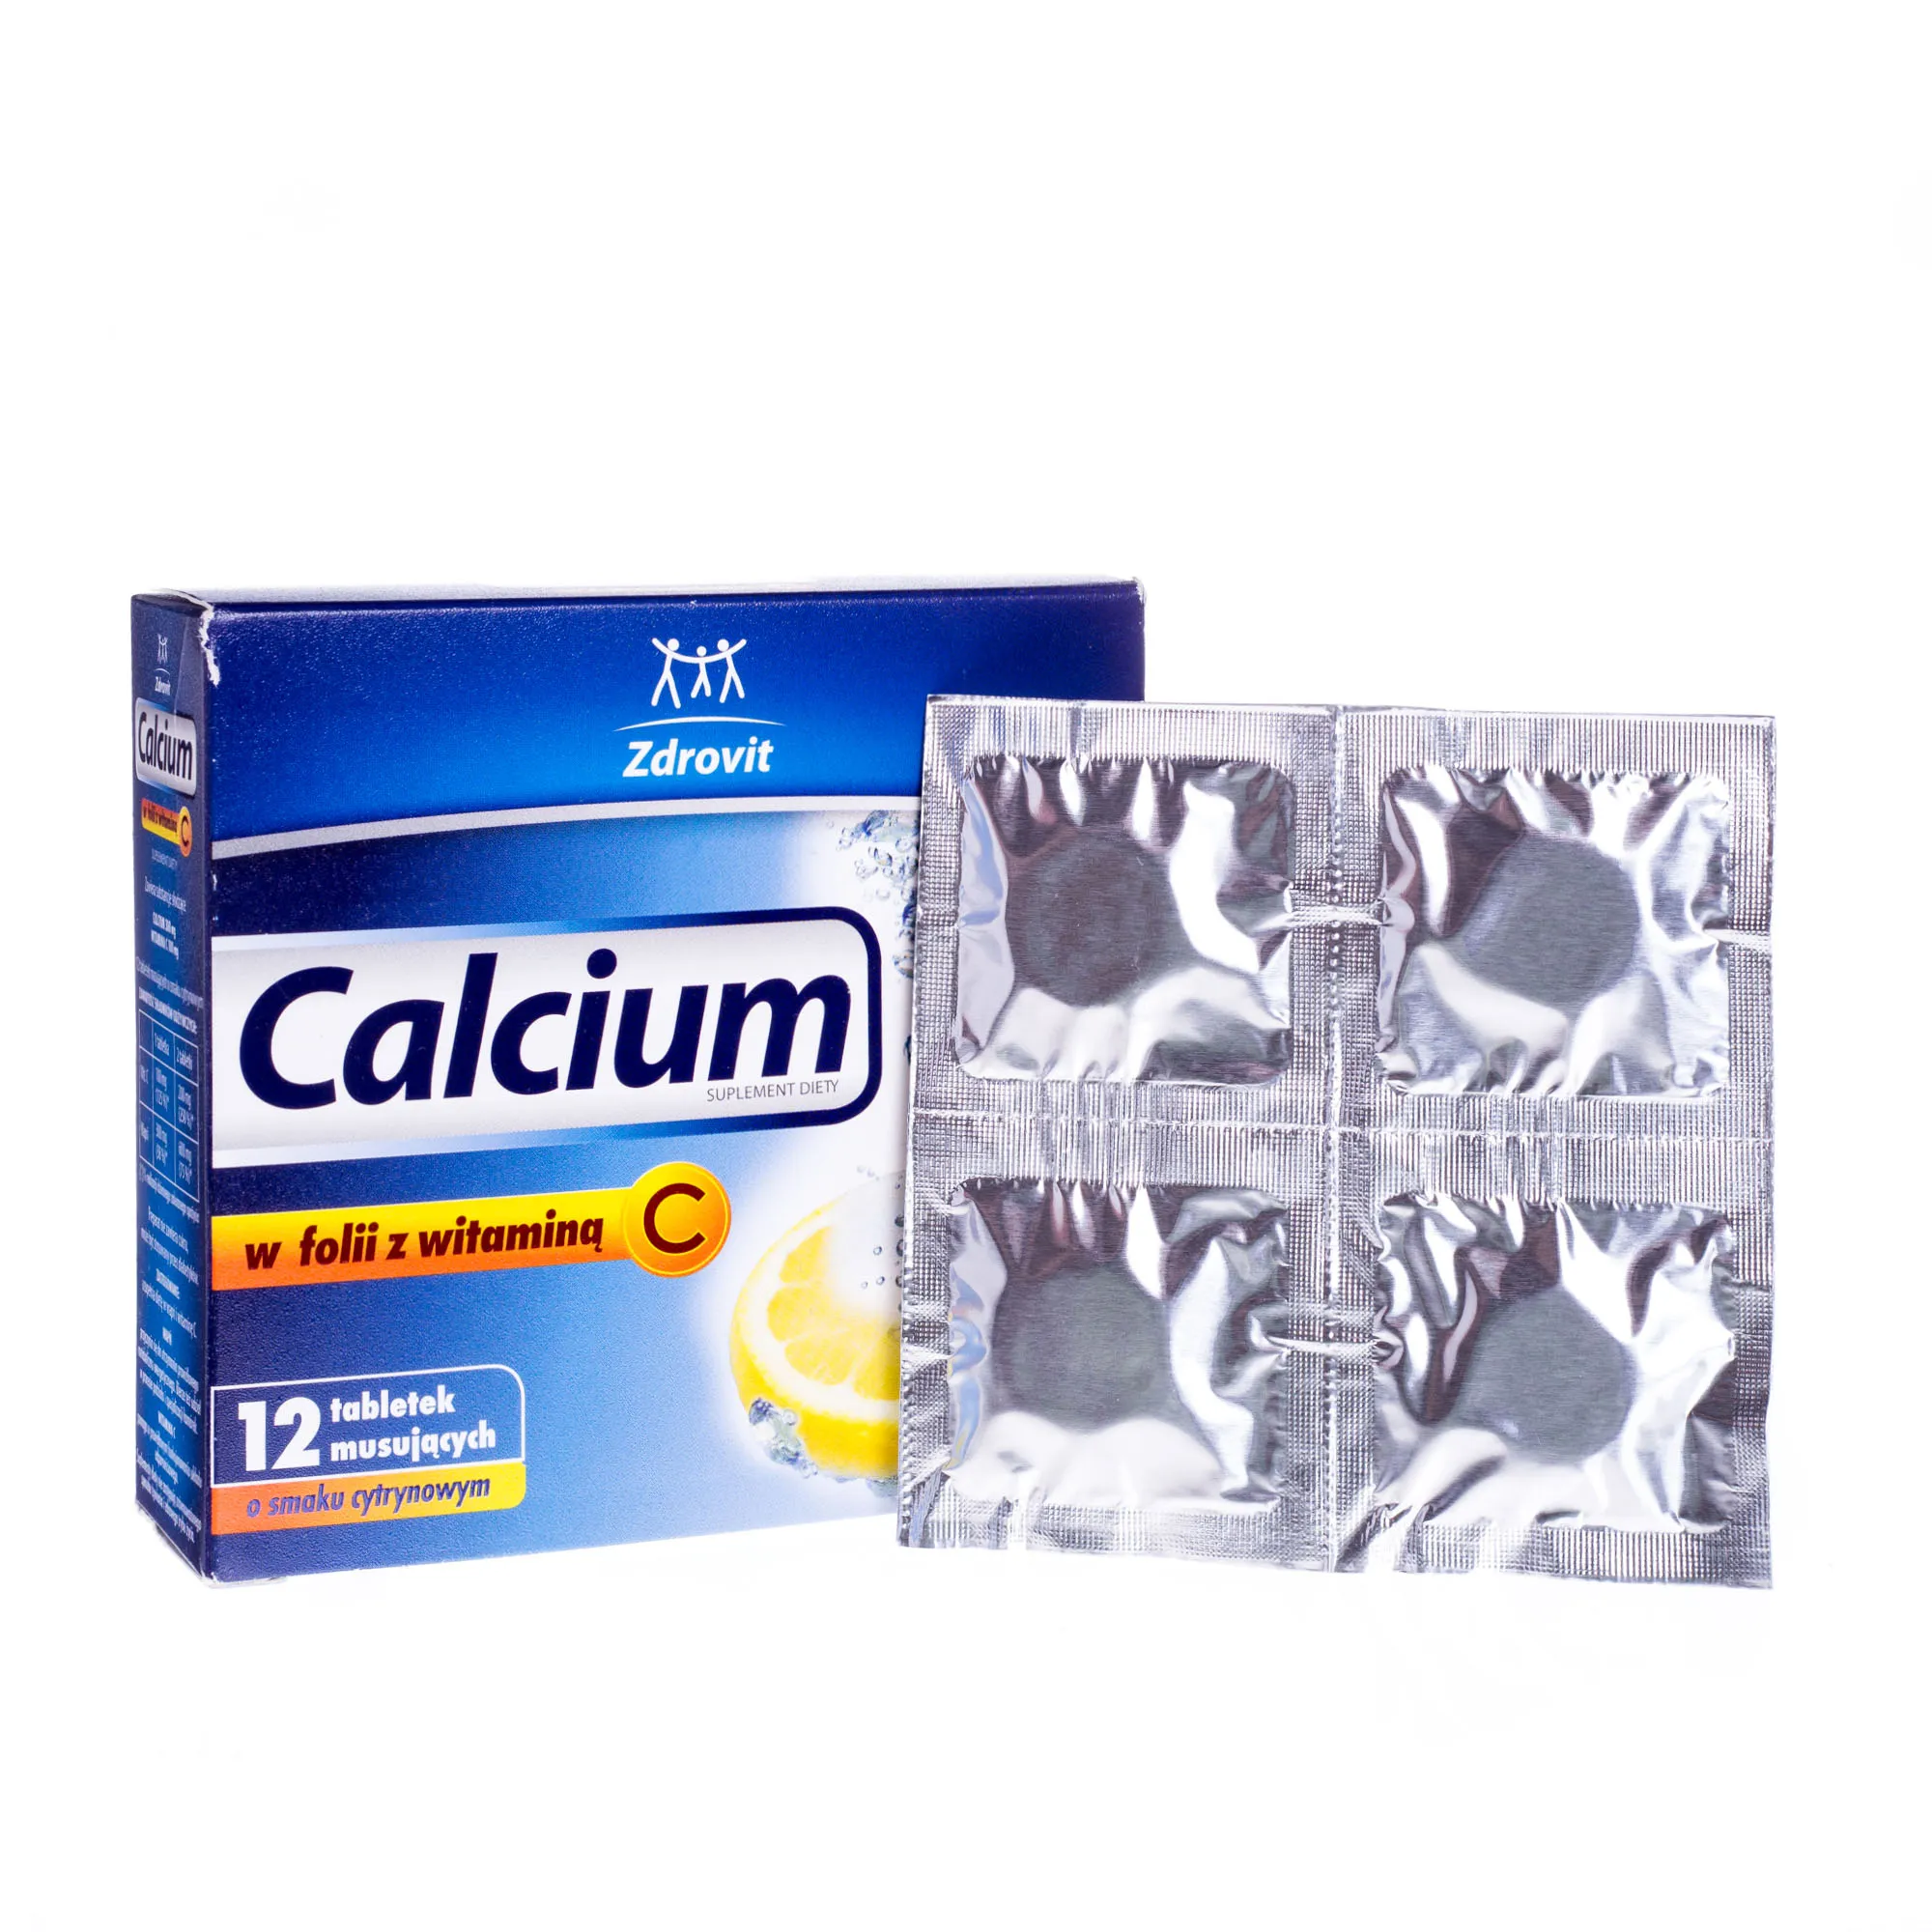 Calcium w folii z wit. C, 12 Tabletek musujących, smak cytrynowy 